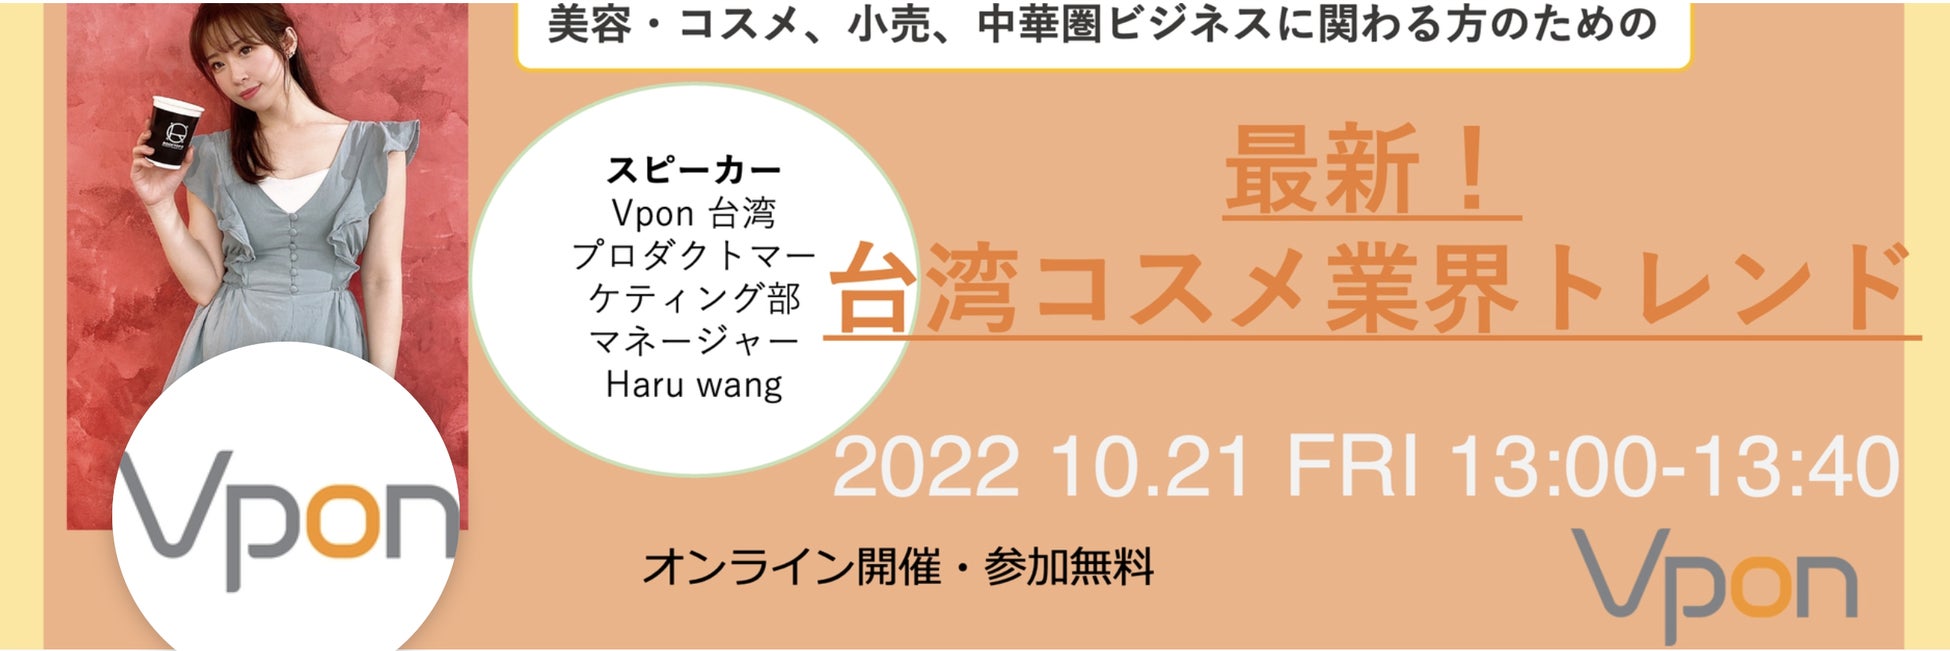 自然食屋のプレマルシェ・ジェラテリアが
10/30 東京で開催される「ビーガングルメ祭り2022秋」に出店